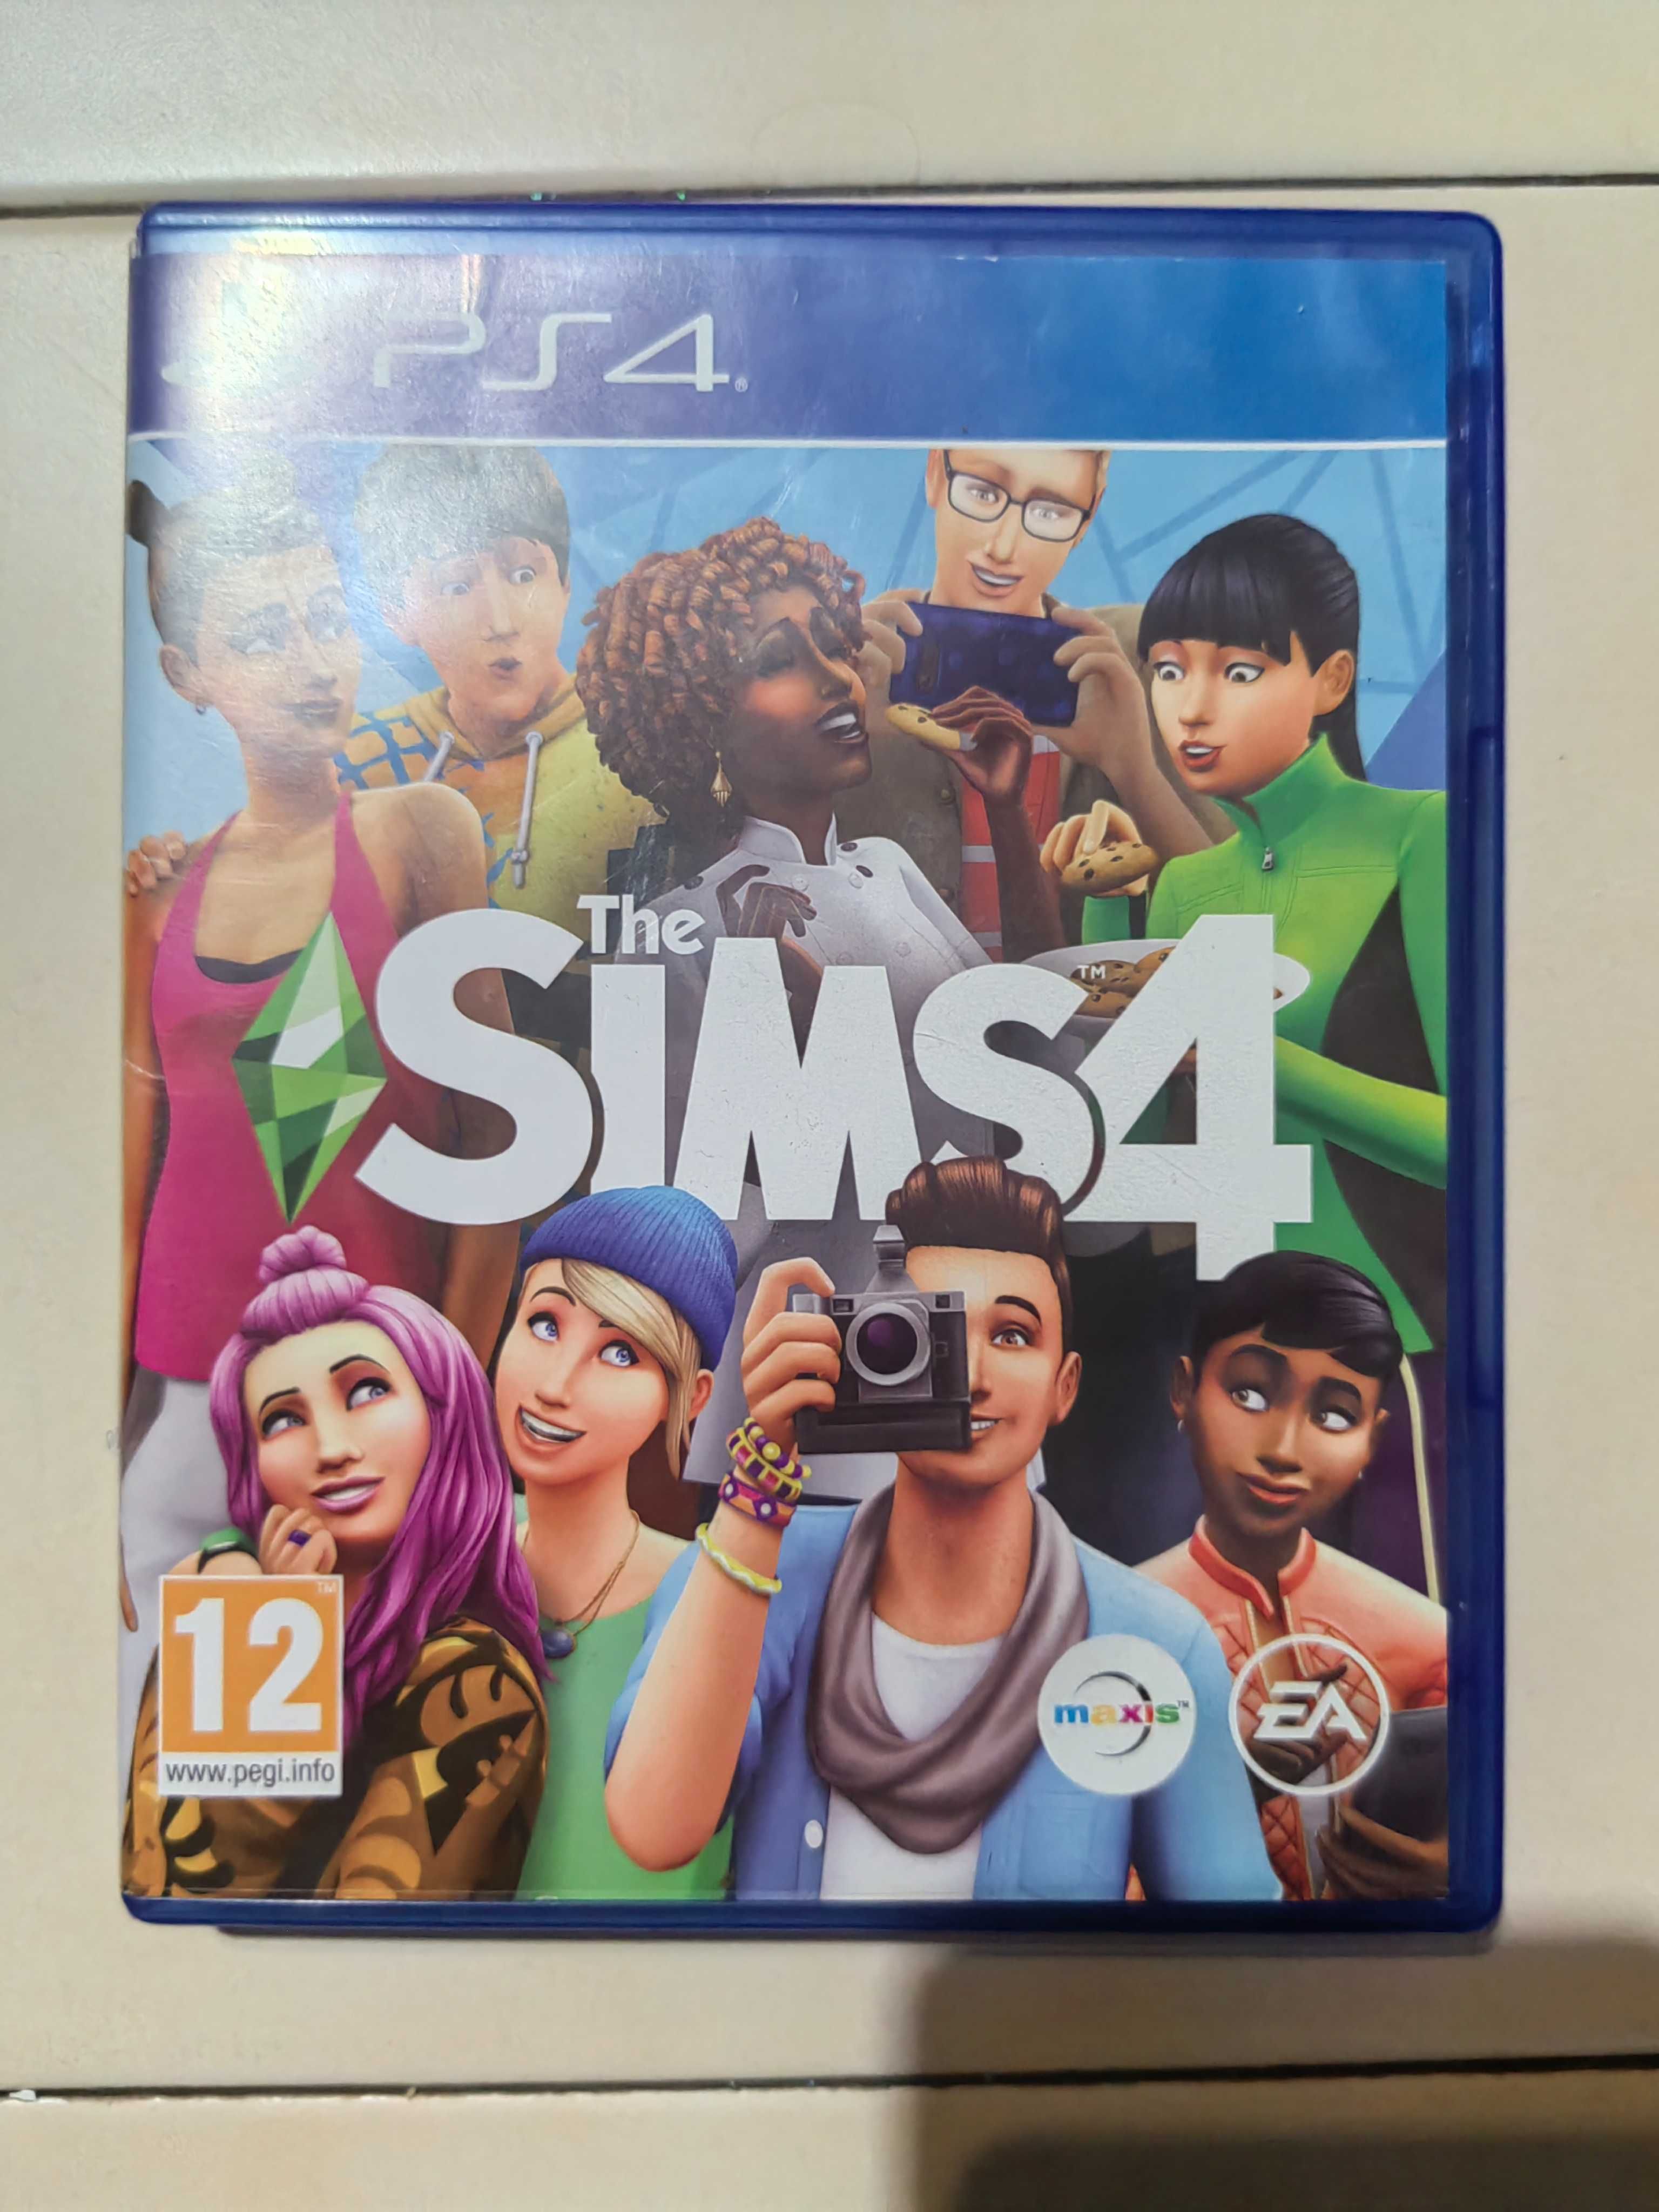 Sims 4 PlayStation 4